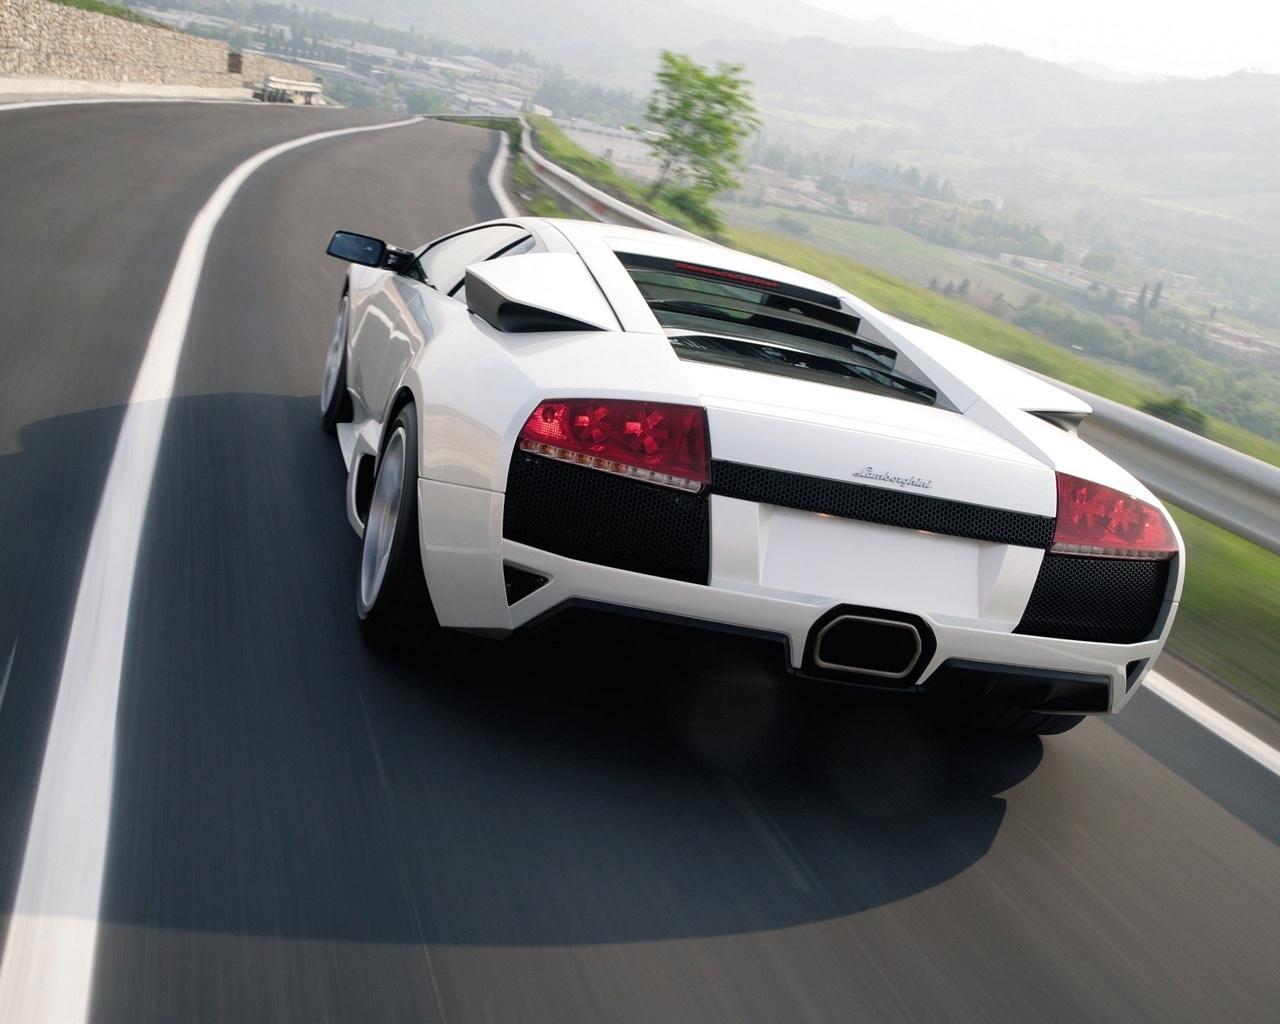 Lamborghini Murcielago LP640 2010 White for 1280 x 1024 resolution